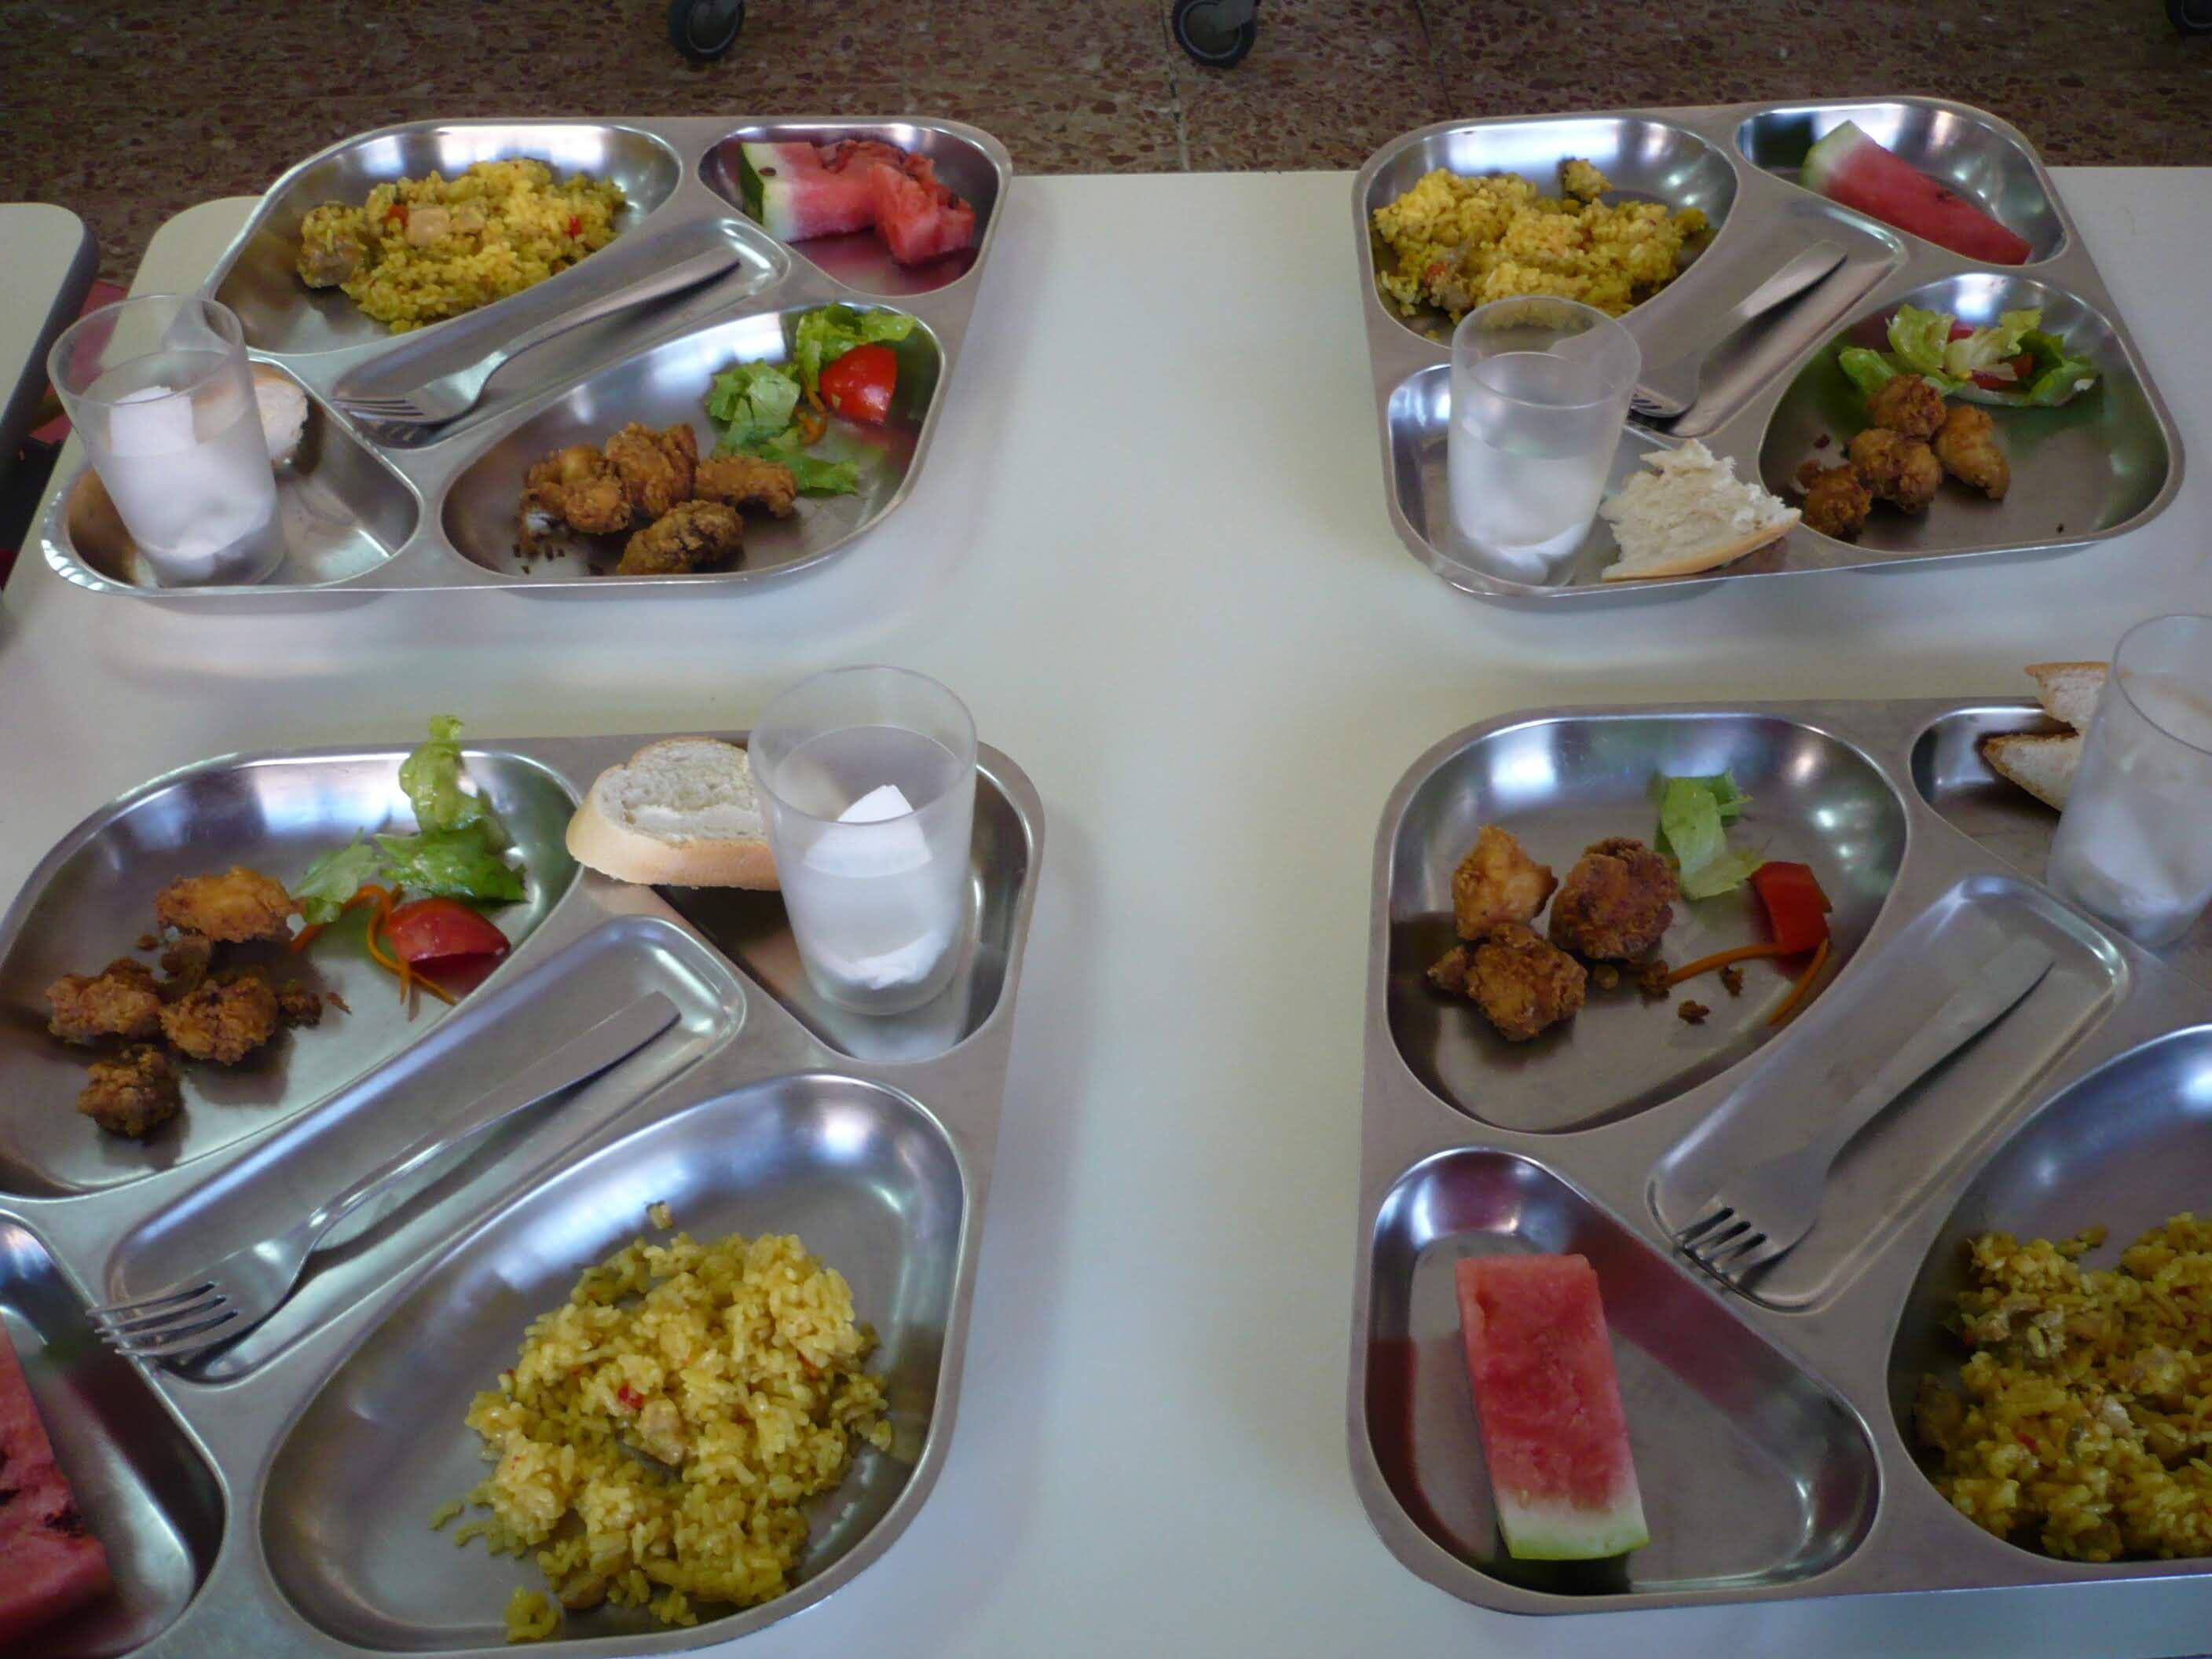 Ejemplo de menú de comedor escolar de los centros concertados Fuhem, donde intentan reducir la proteína animal. Imagen proporcionada por la instituación educativa. 